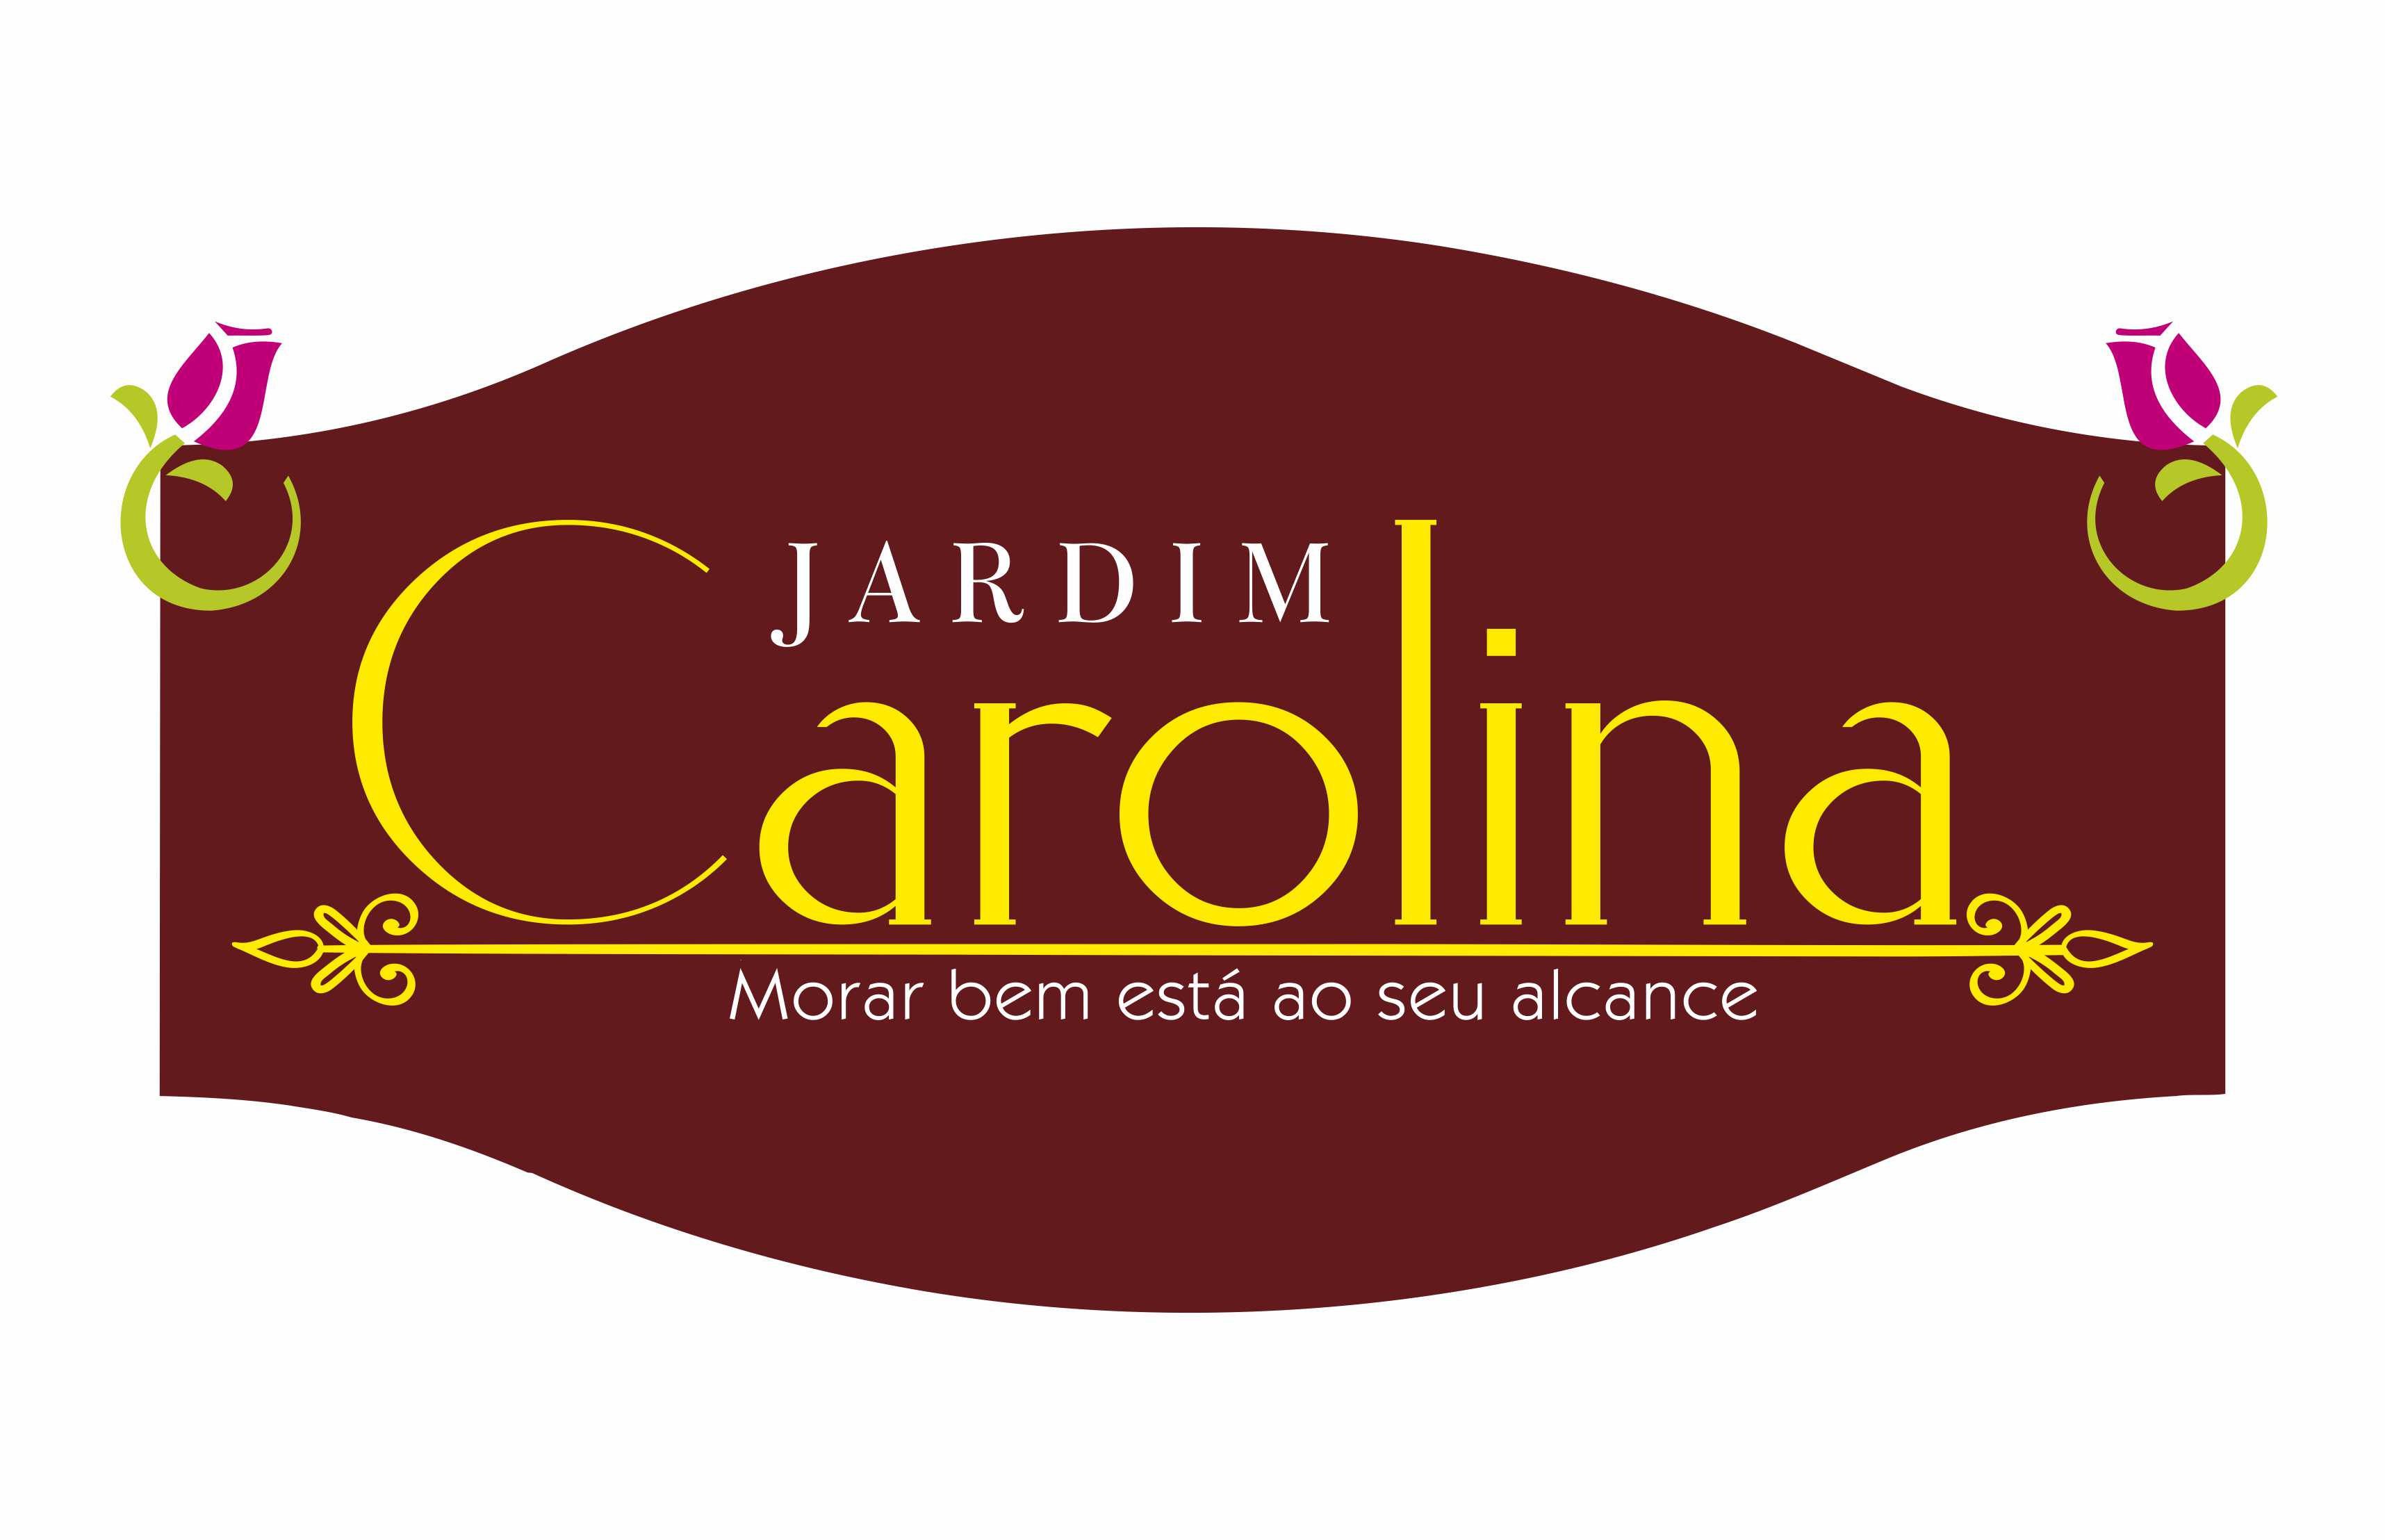 Jardim Carolina